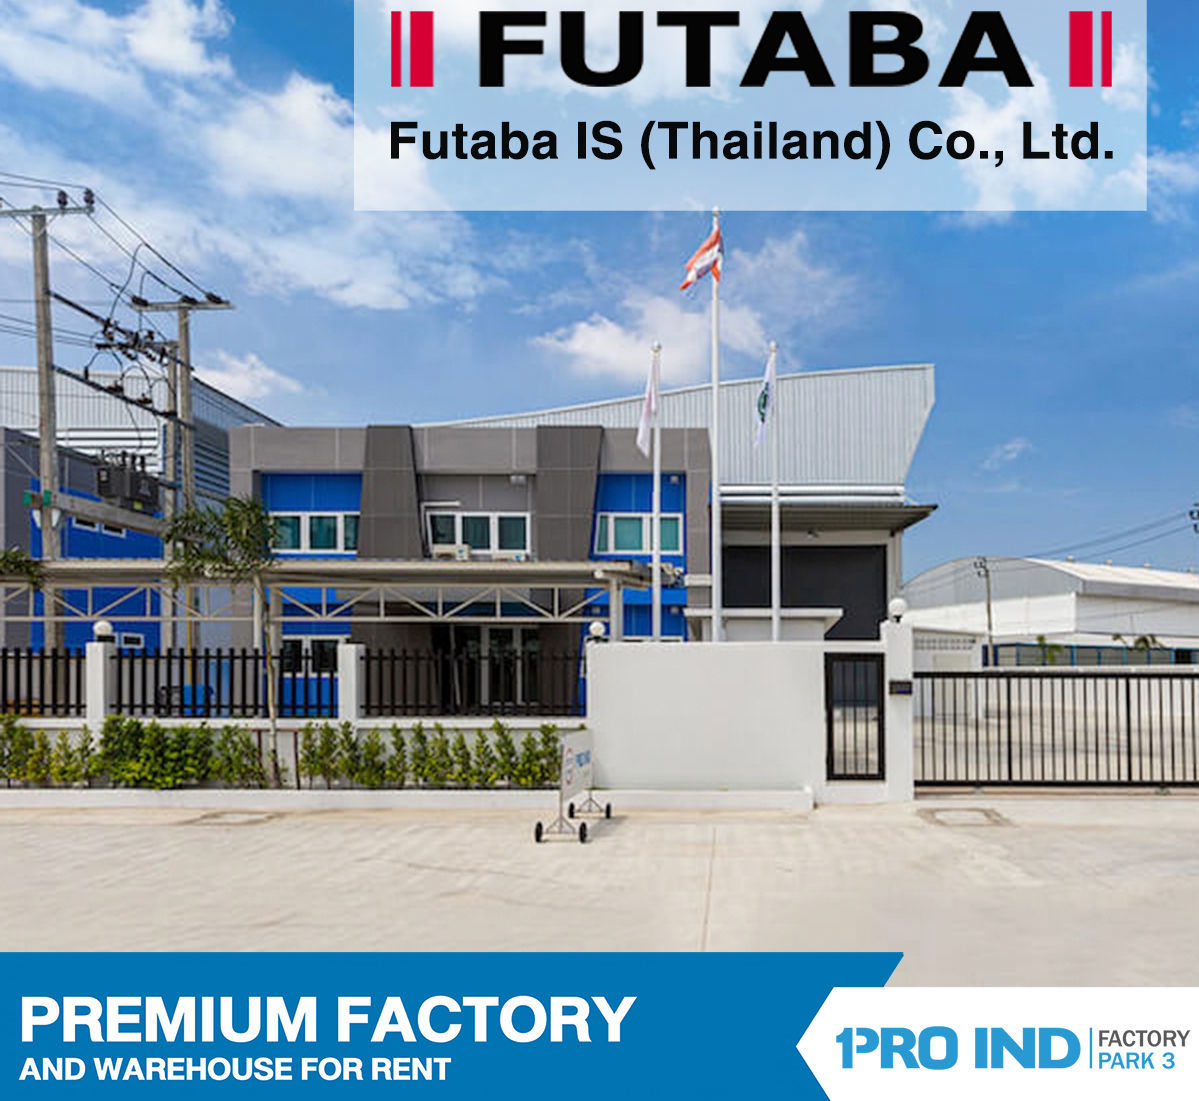 ลูกค้าเช่าโรงงาน Futaba IS